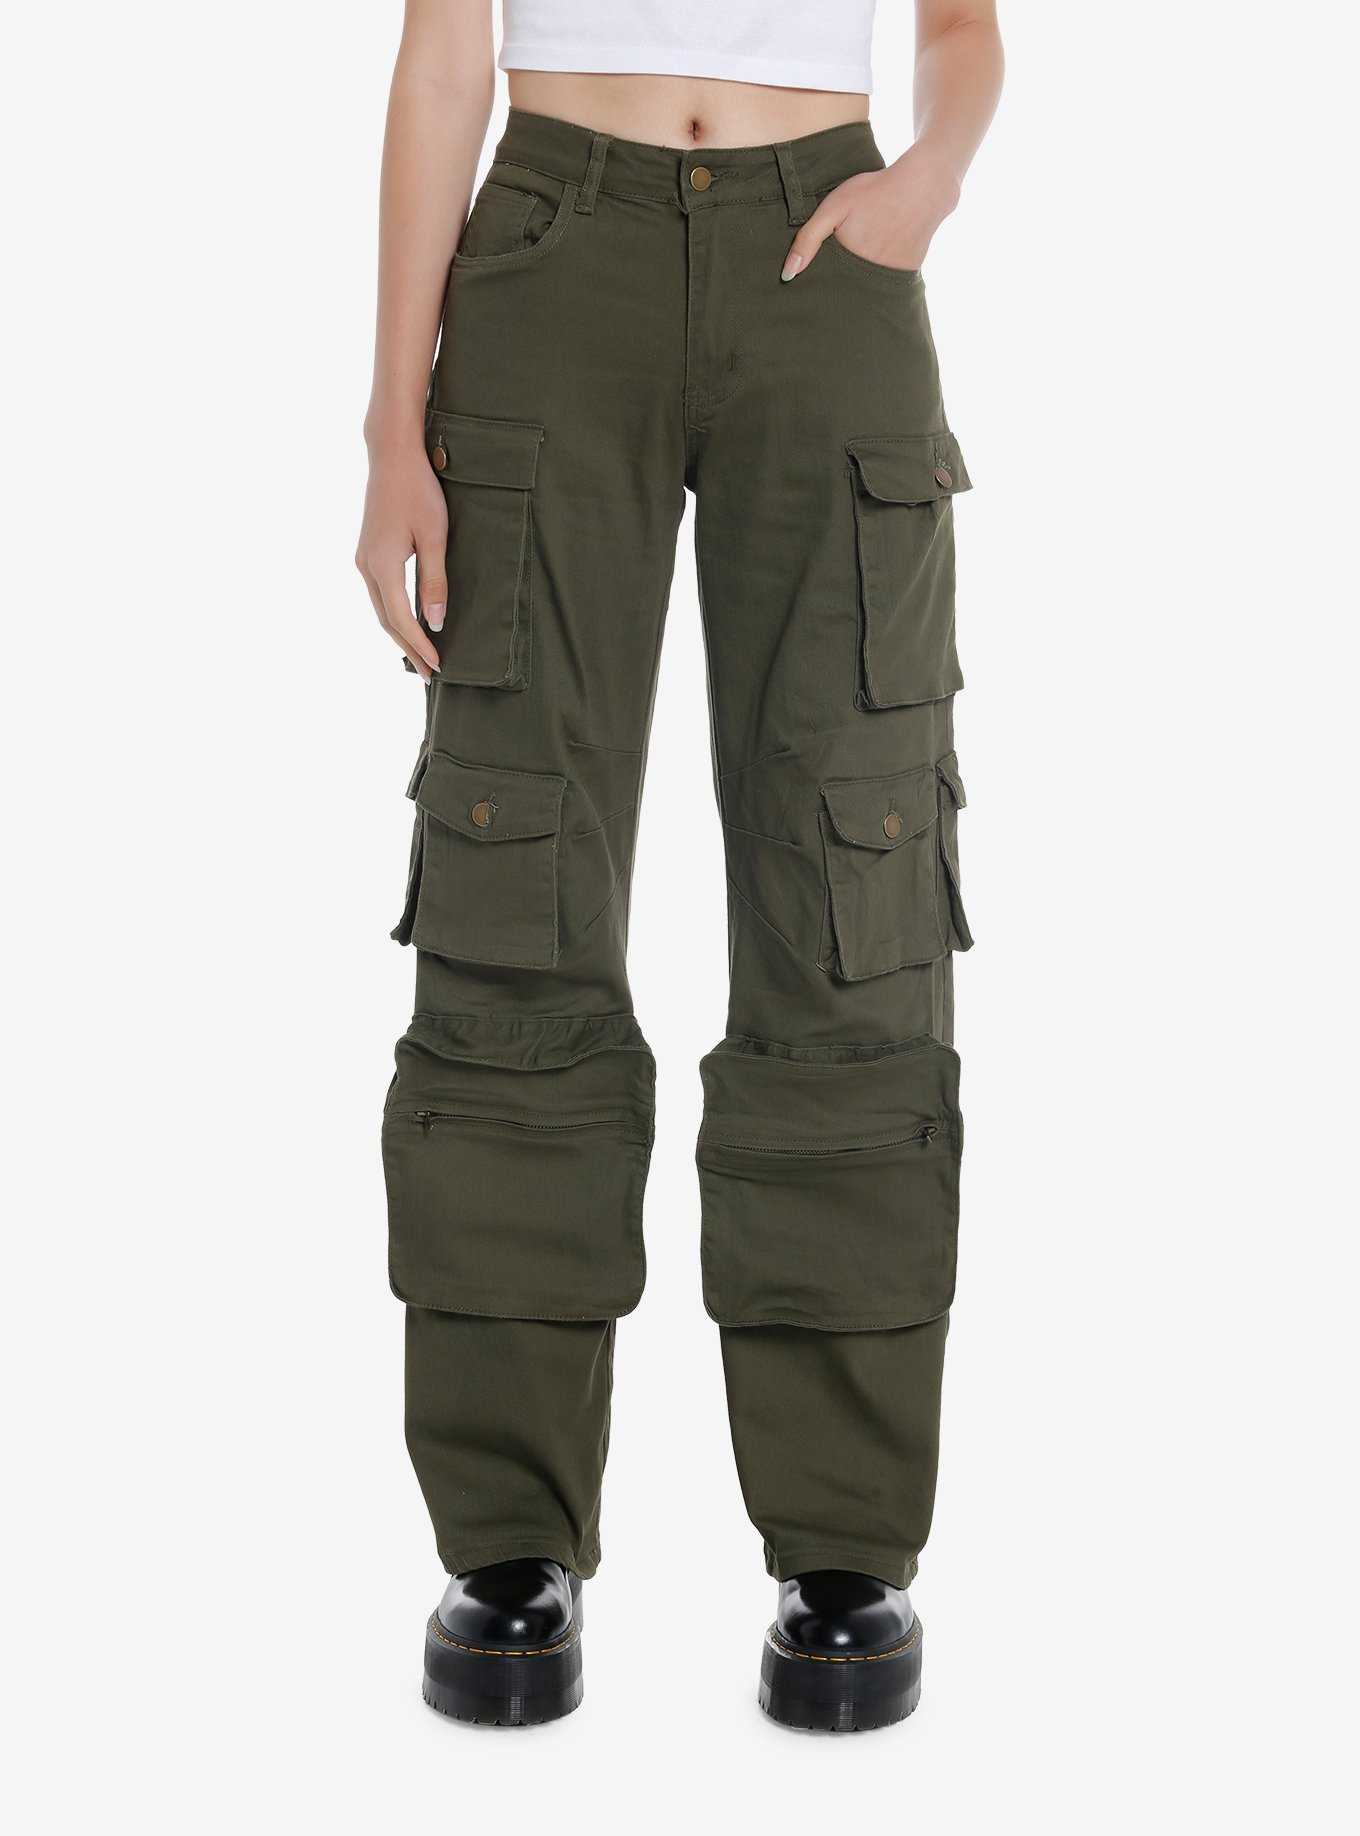 Olive Green Multi-Pocket Girls Cargo Pants, , hi-res